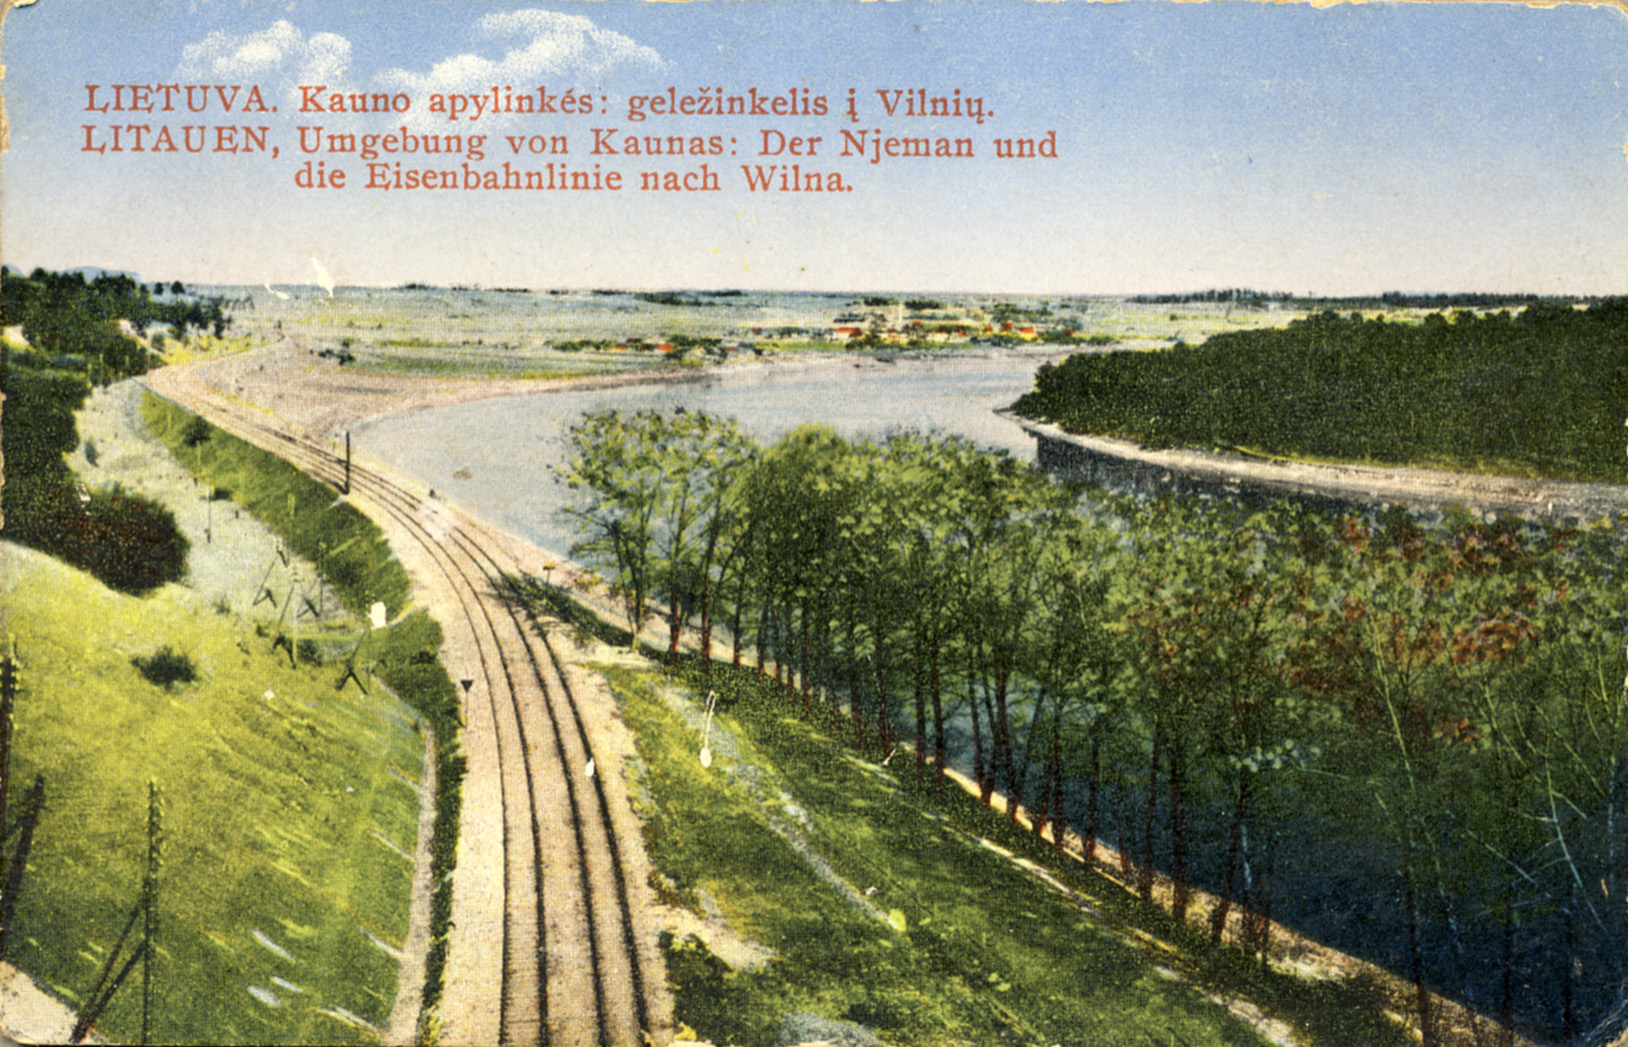 Kauno apylinkės: geležinkelis į Vilnių. 1926–1927 m. Atvirukas [Iš KAVB fondų]